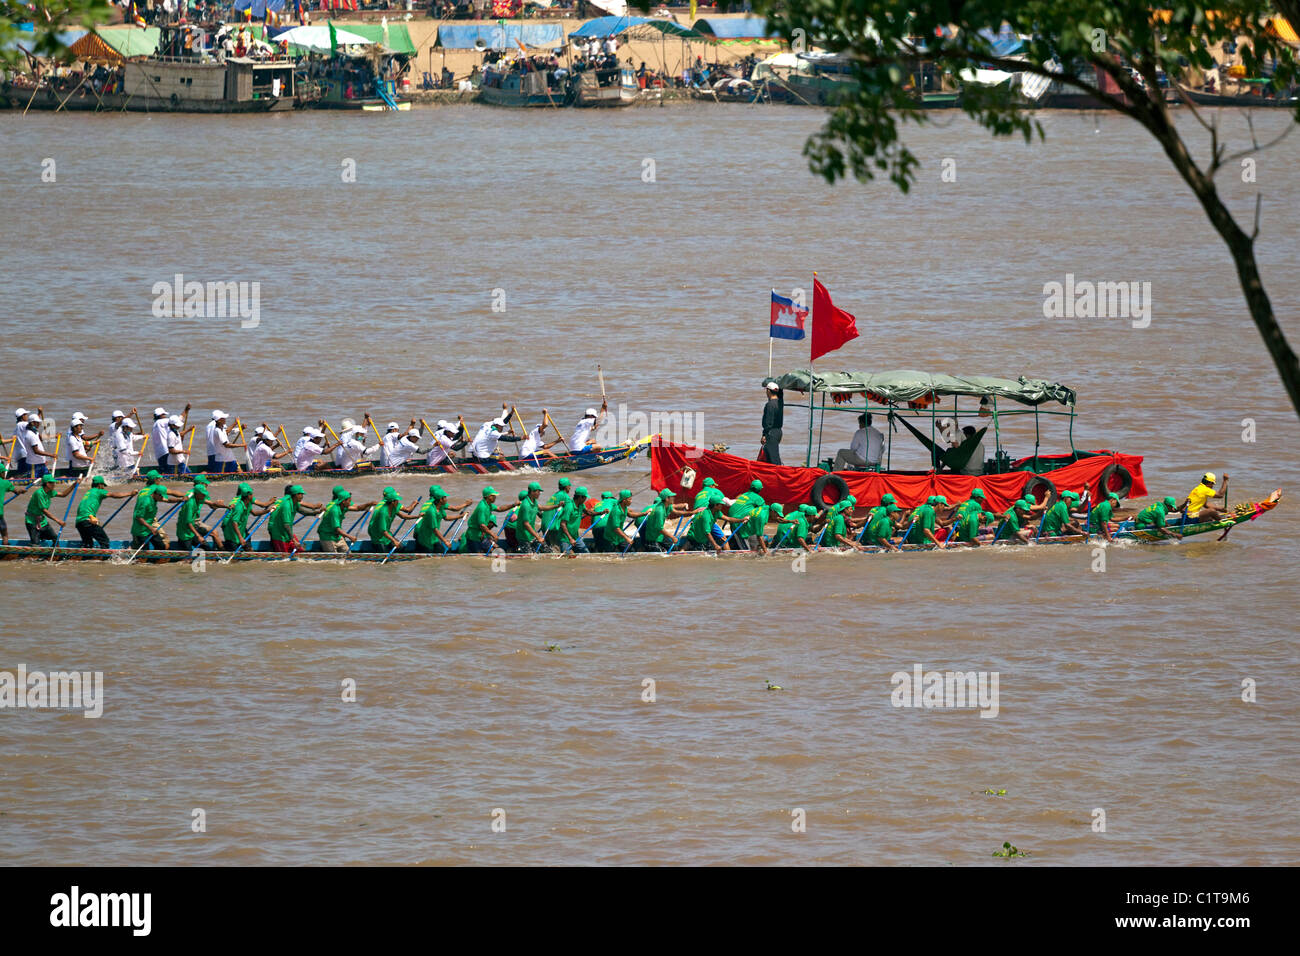 Fête de l'eau et dragon boat race, Tonle Sap, Phnom Penh, Cambodge Banque D'Images